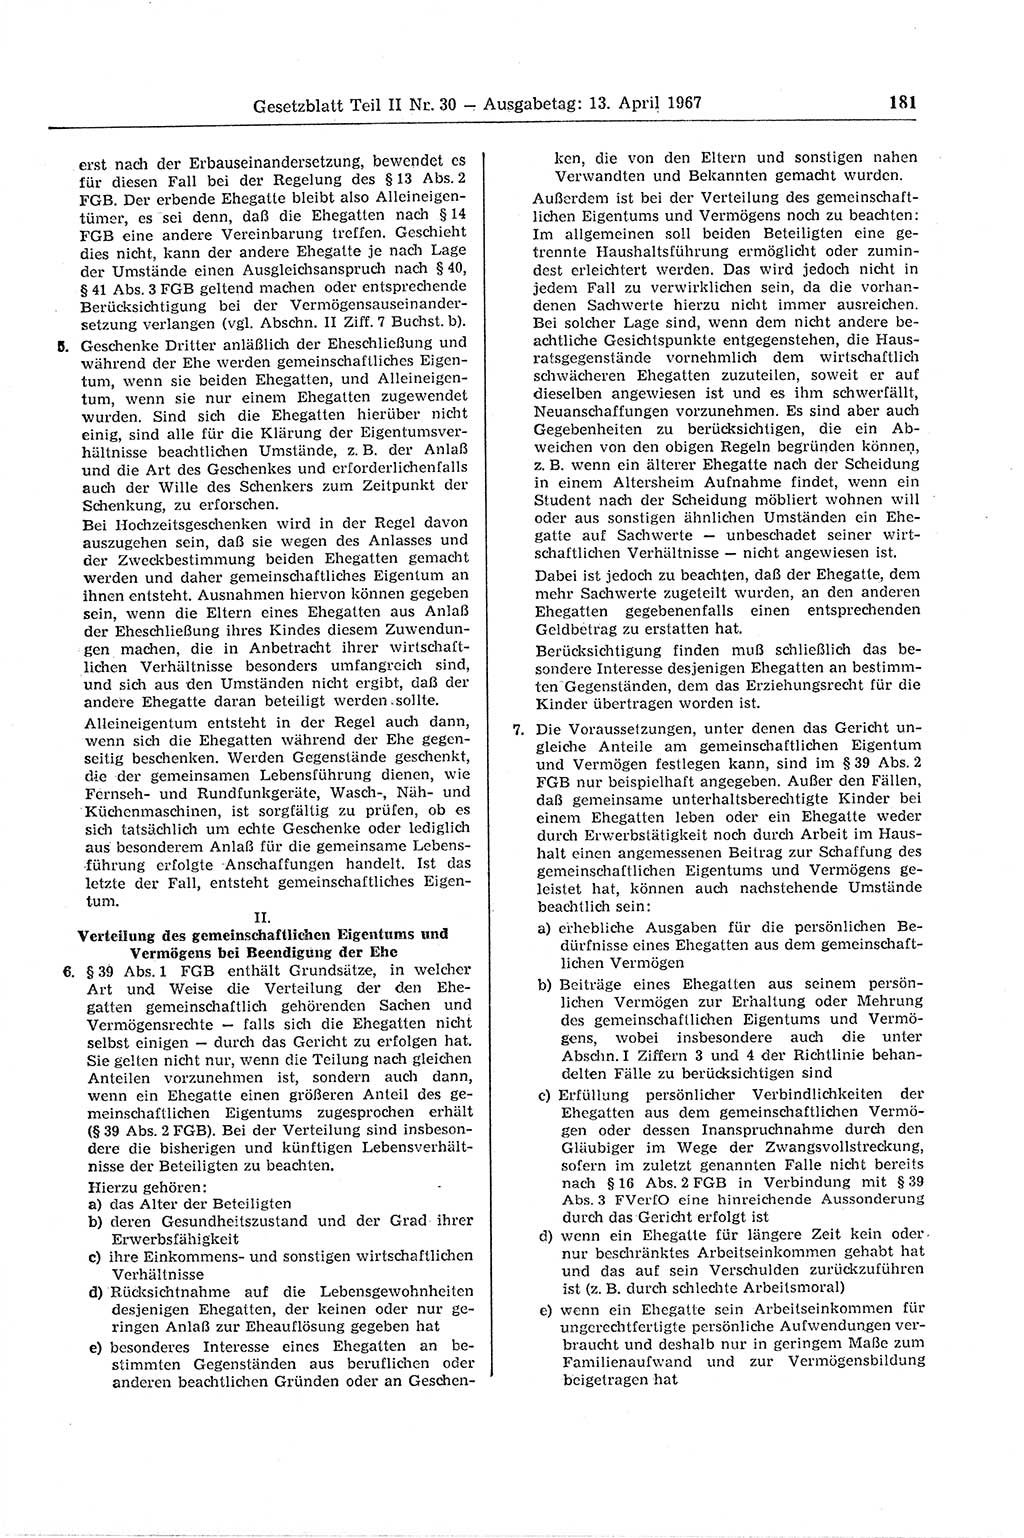 Gesetzblatt (GBl.) der Deutschen Demokratischen Republik (DDR) Teil ⅠⅠ 1967, Seite 181 (GBl. DDR ⅠⅠ 1967, S. 181)